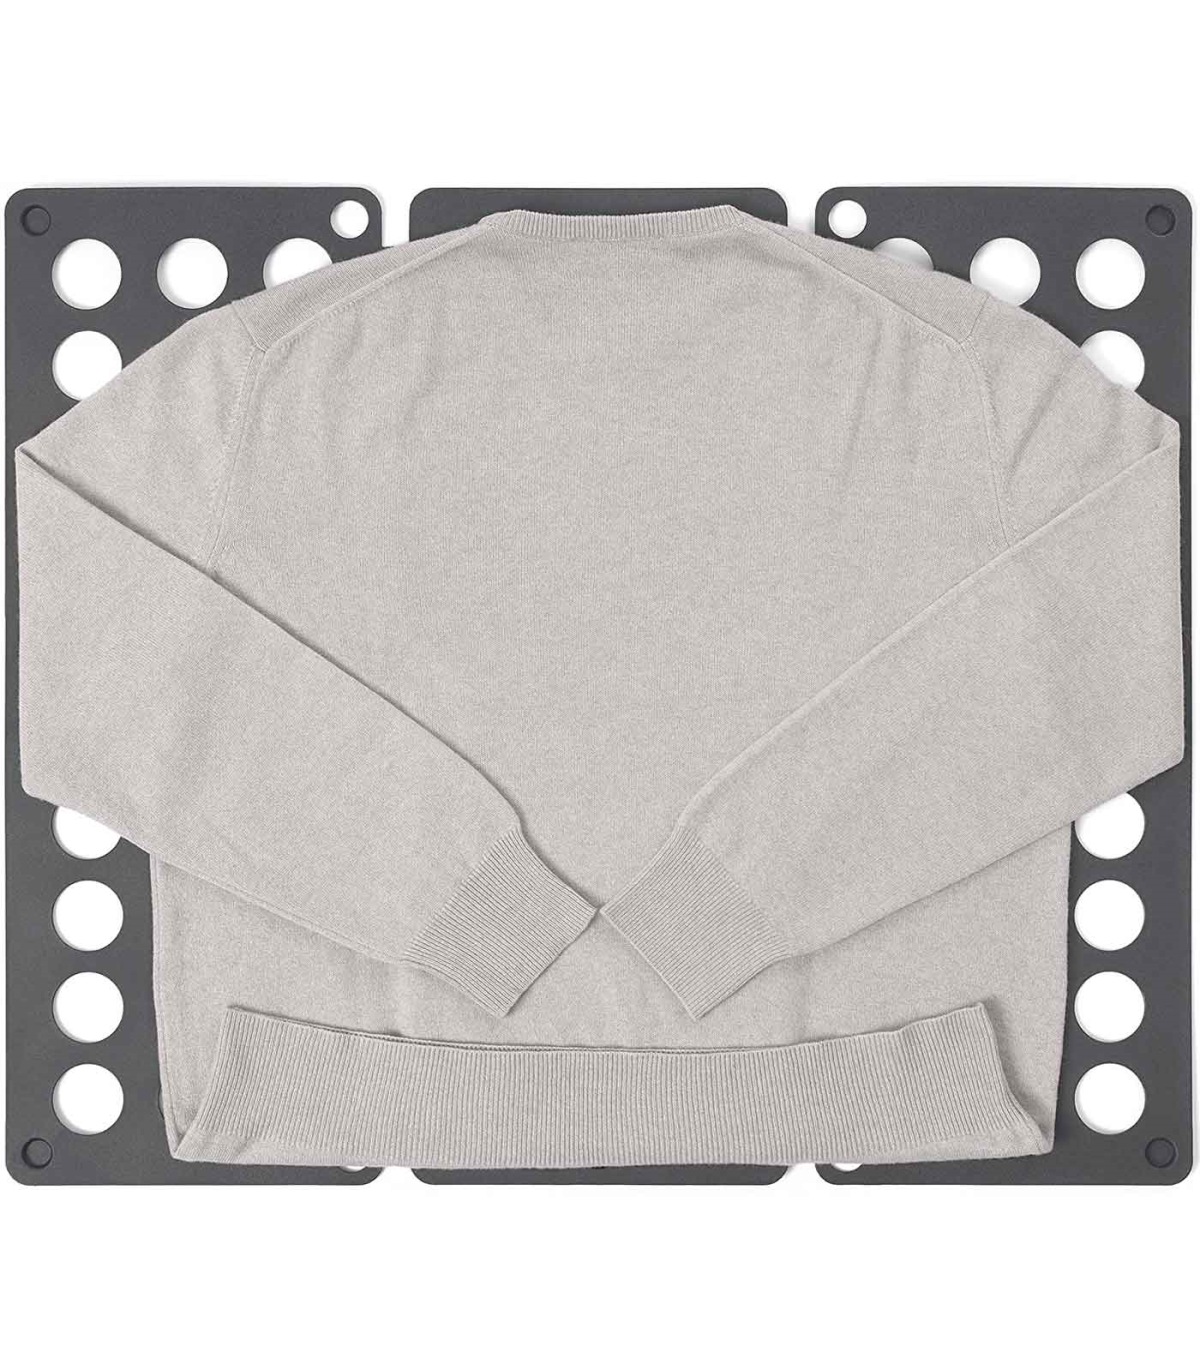 Tradineur - Doblador de ropa plegable de plástico, tabla para doblar  prendas, placa de ayuda, plegar camisetas, jerséis, pantalo